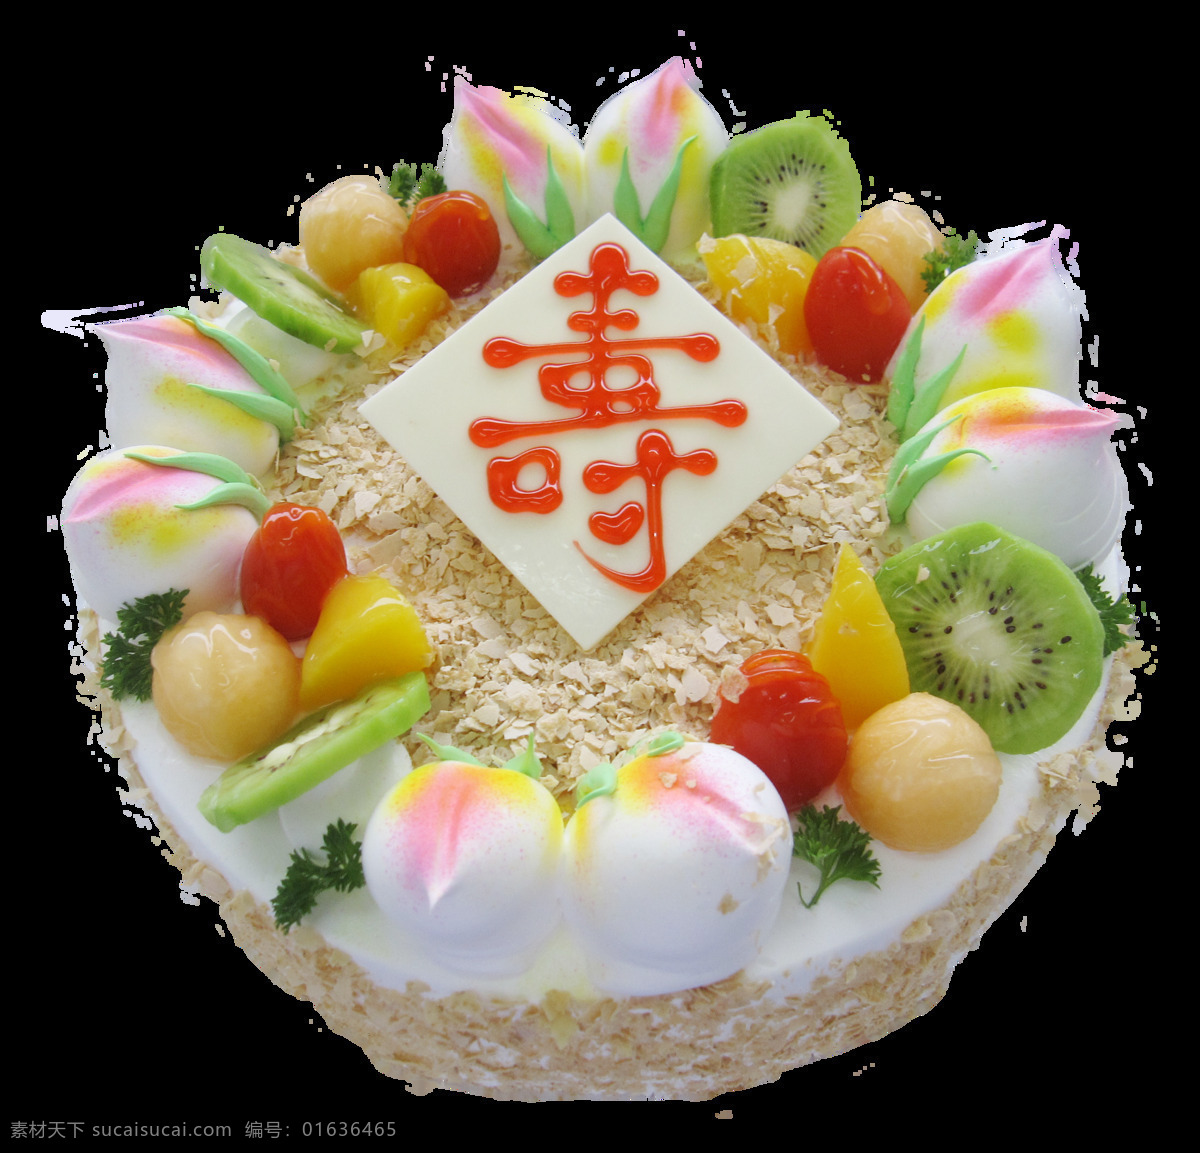 寿桃 水果 蛋糕 创意蛋糕 蛋糕模型 蛋糕元素 节日蛋糕 卡通蛋糕 美味蛋糕 奶油